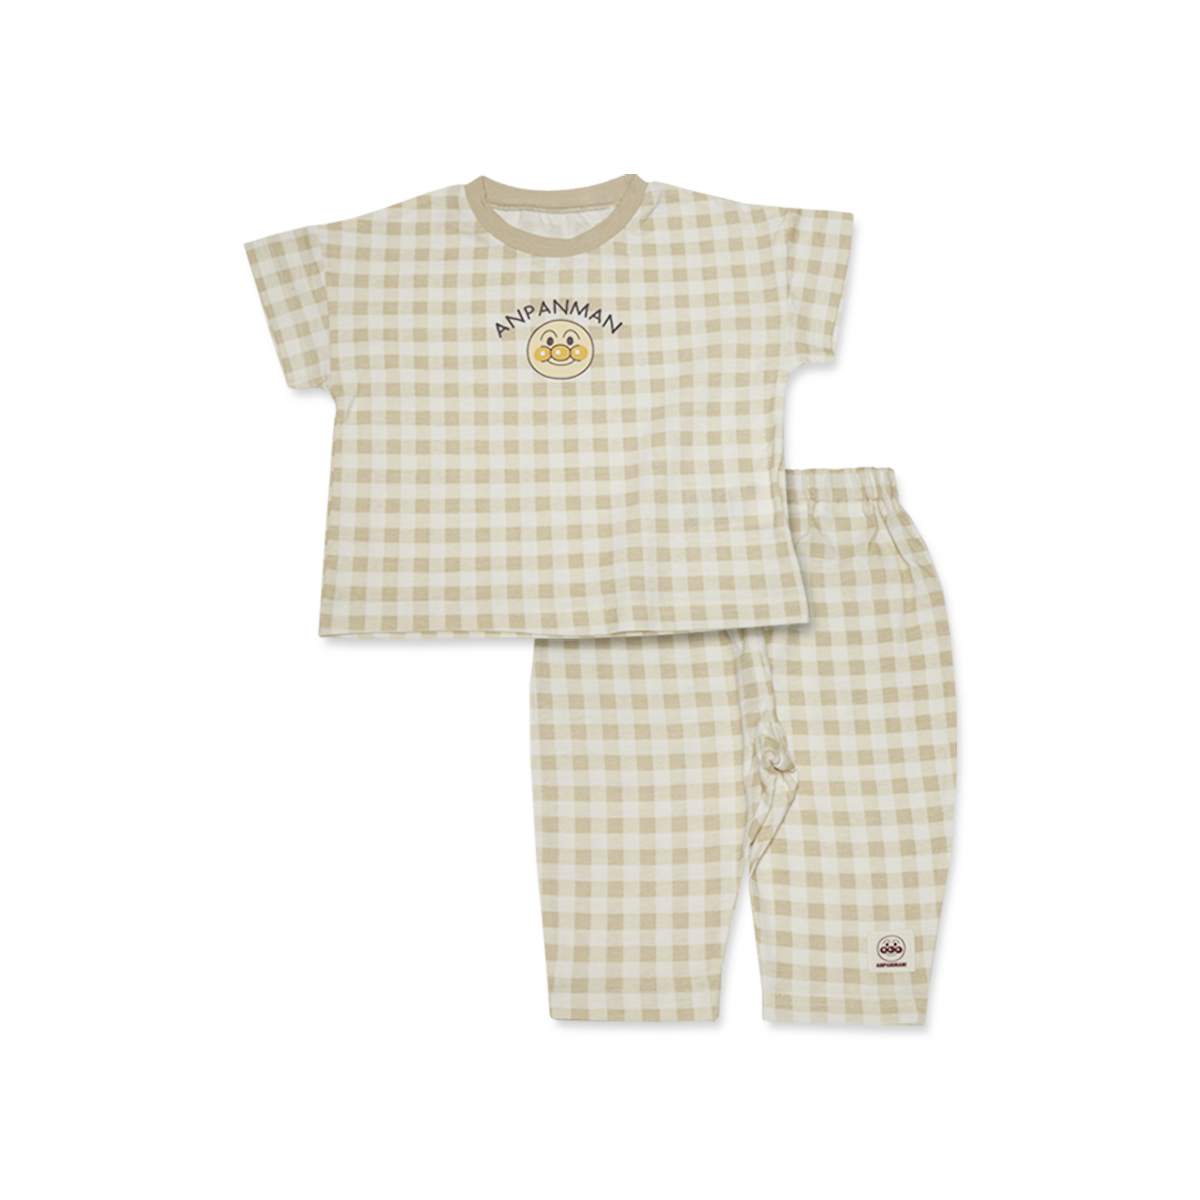  Anpanman лето серебристый жевательная резинка проверка короткий рукав пижама SA2633 90/95/100cm